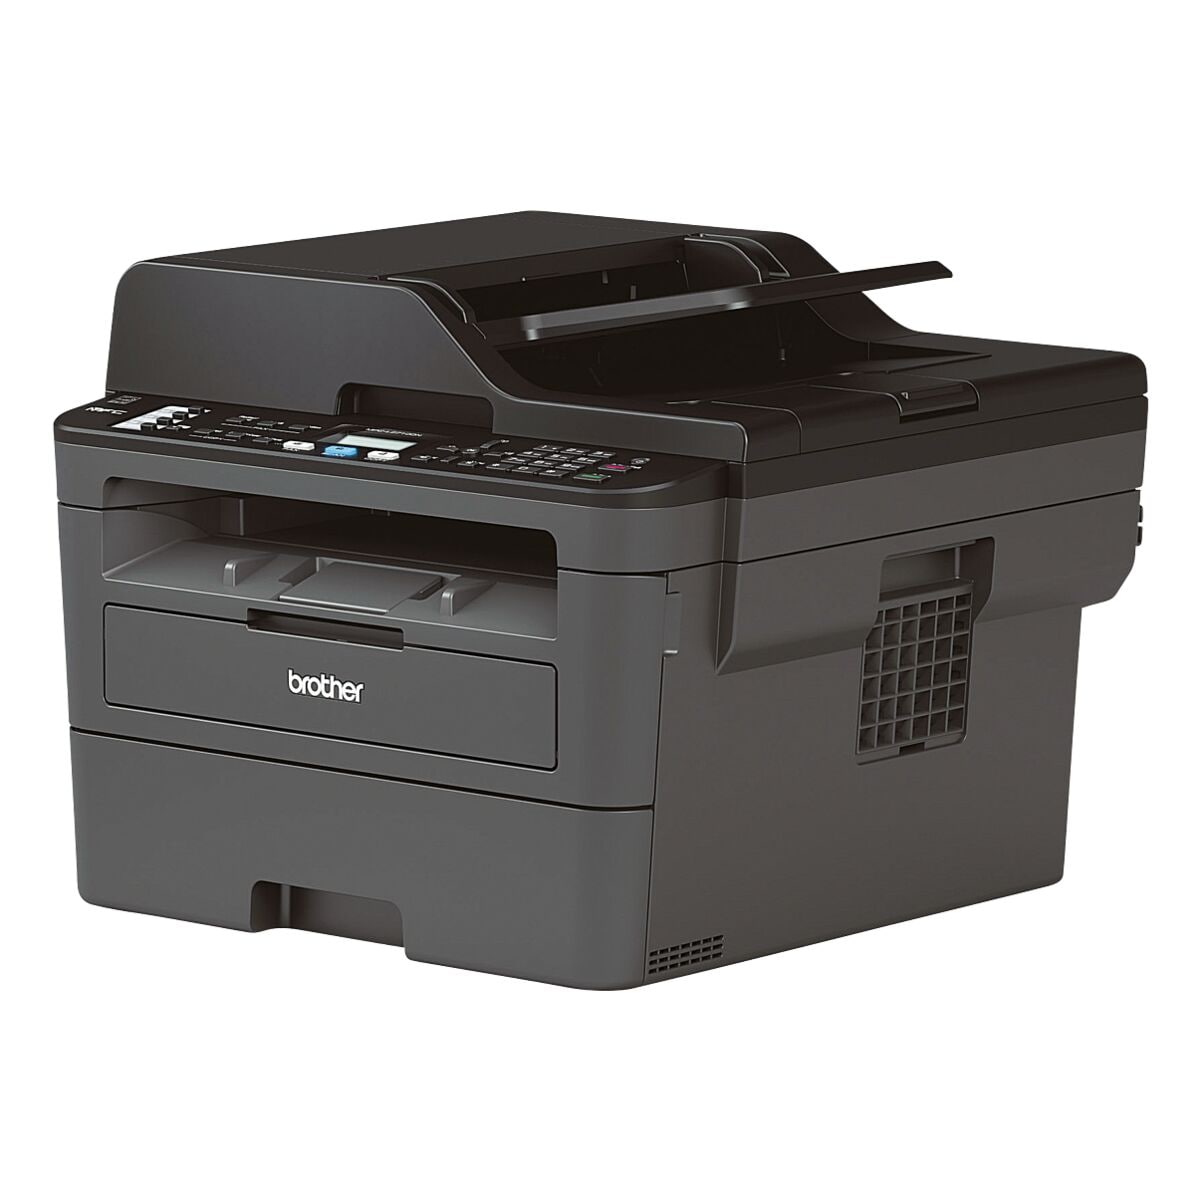 Brother MFC-L2710DN Multifunktionsdrucker, A4 schwarz weiß Laserdrucker, 1200 x 1200 dpi, mit LAN